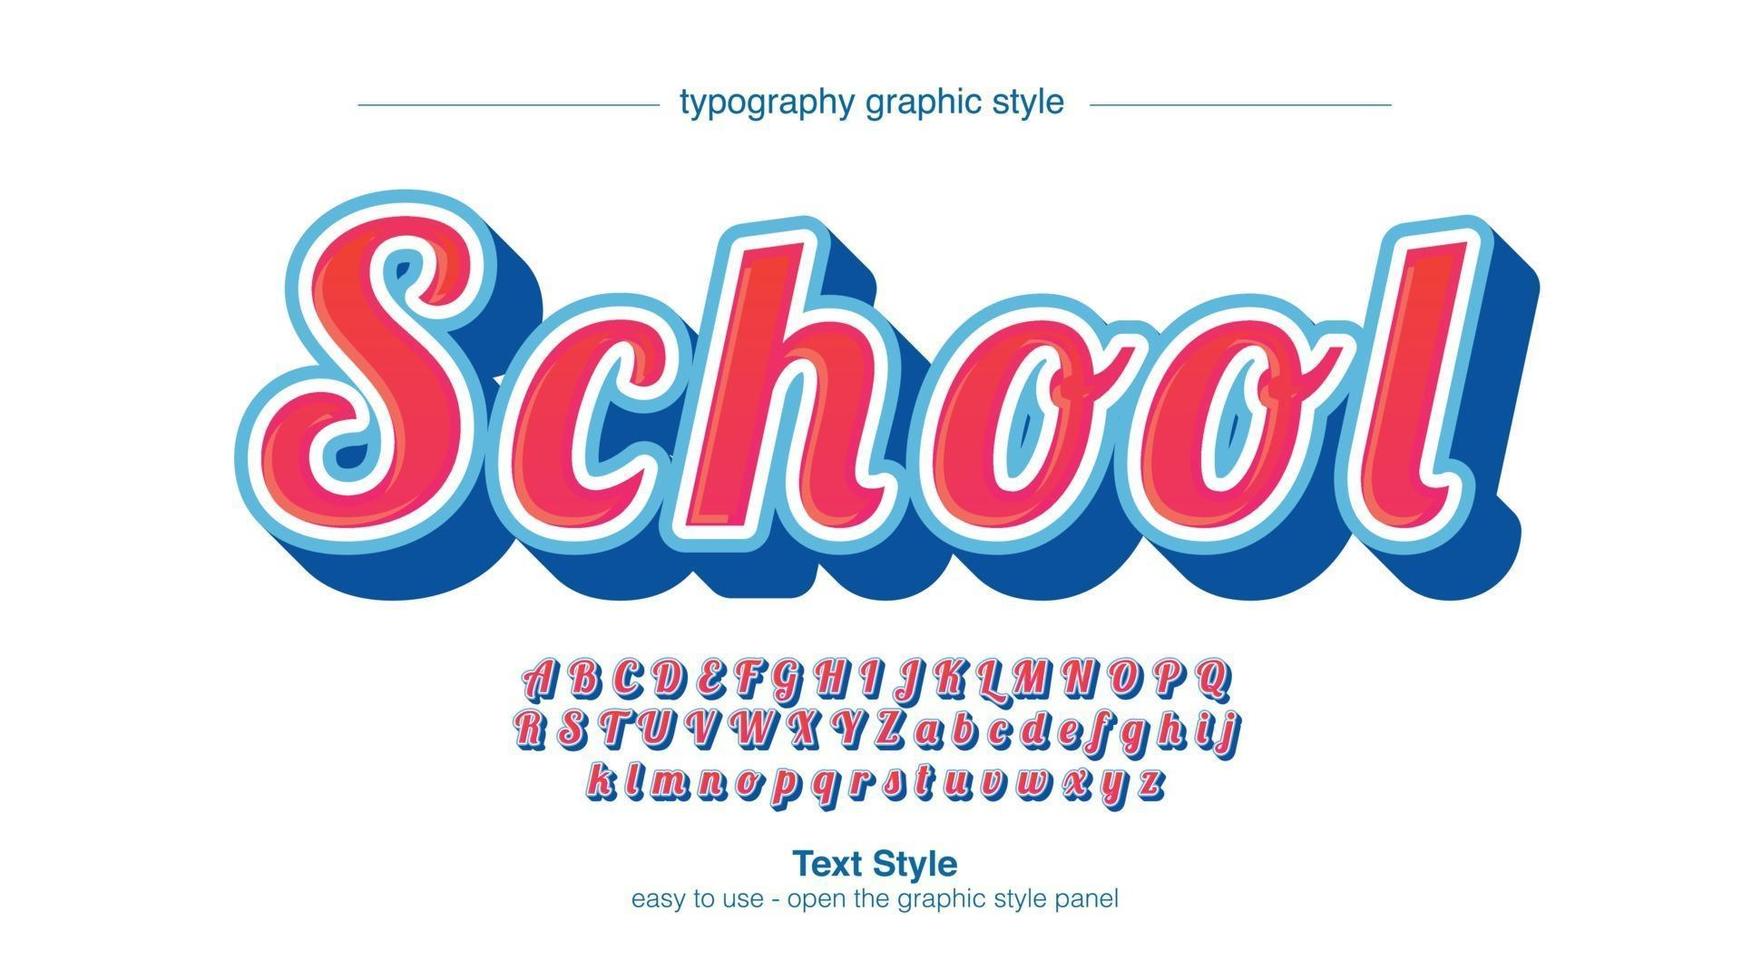 tipografia corsiva con pennello 3D grassetto rosso e blu vettore